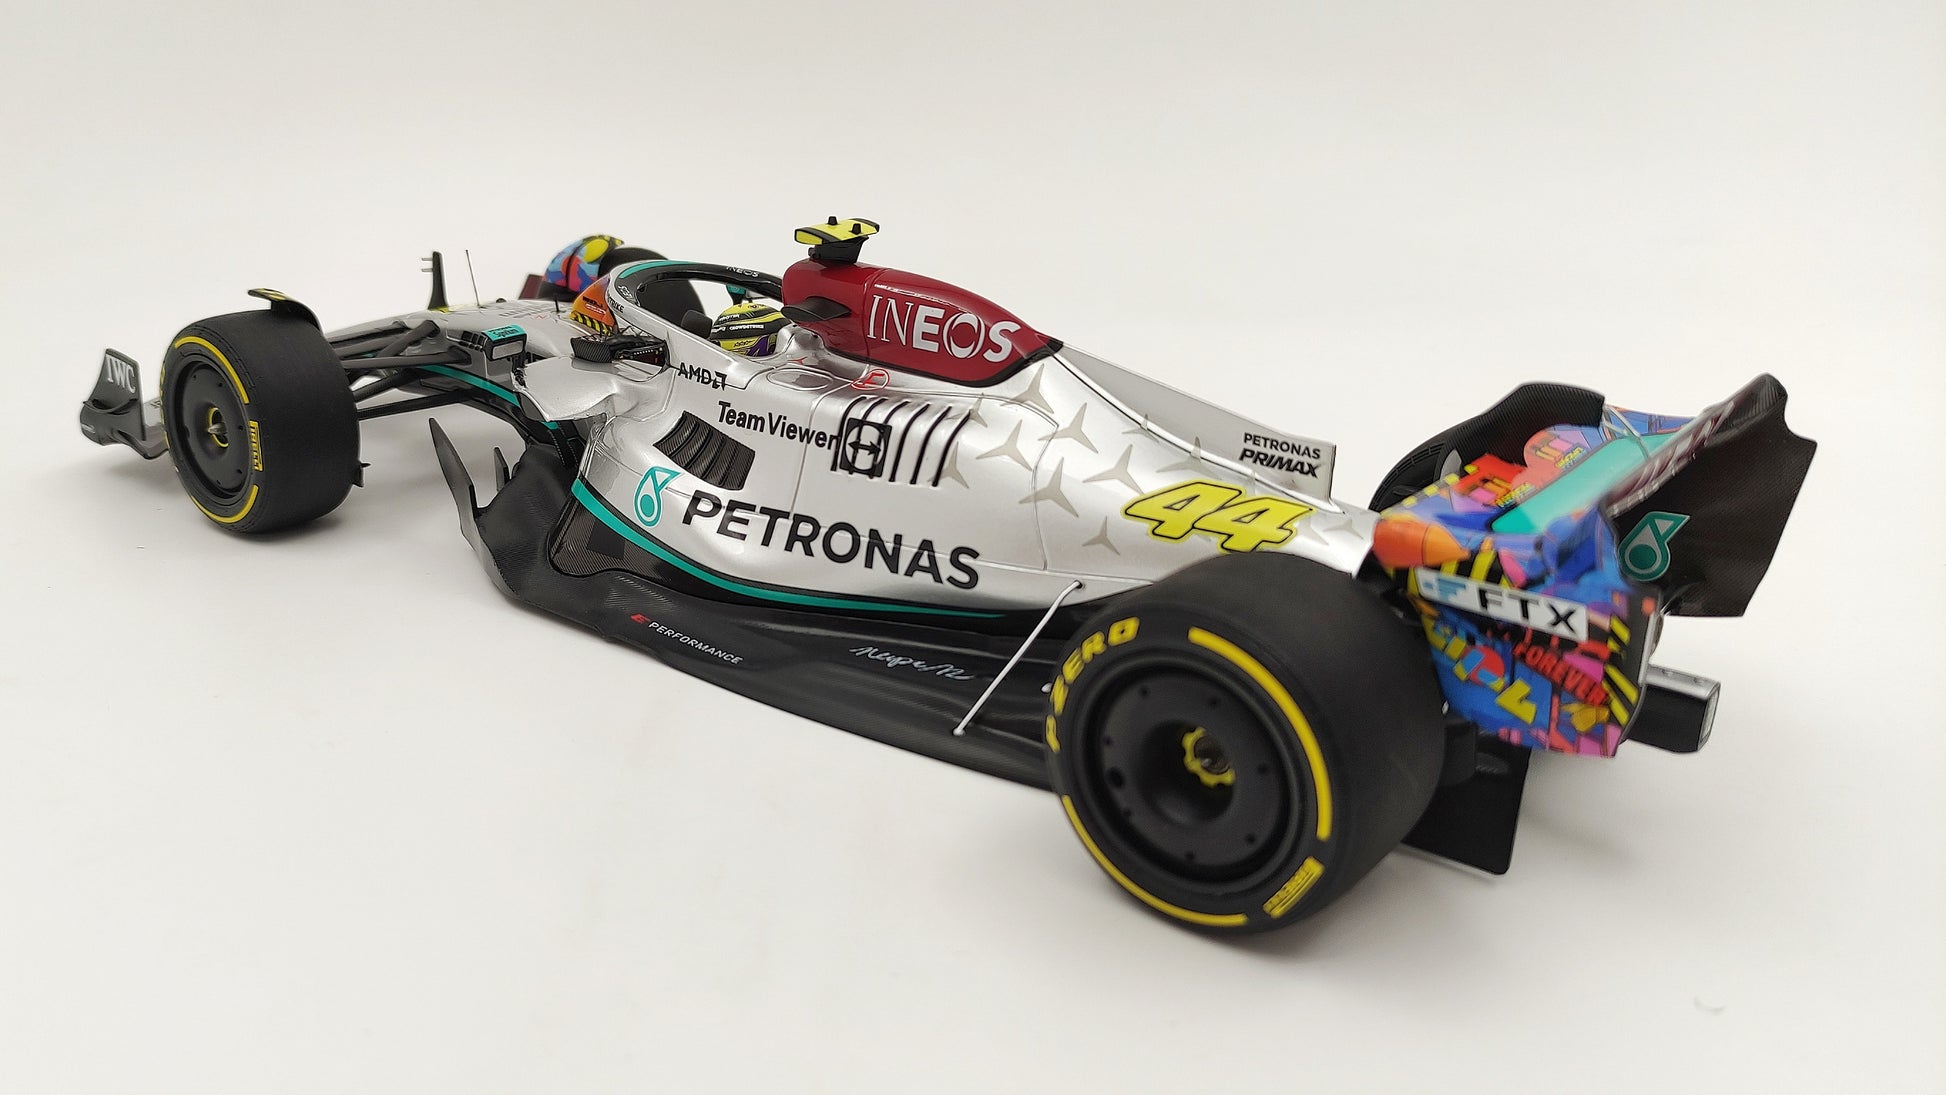 Lewis Hamilton Mercedes AMG Petronas W13 Formule 1 2022 Édition